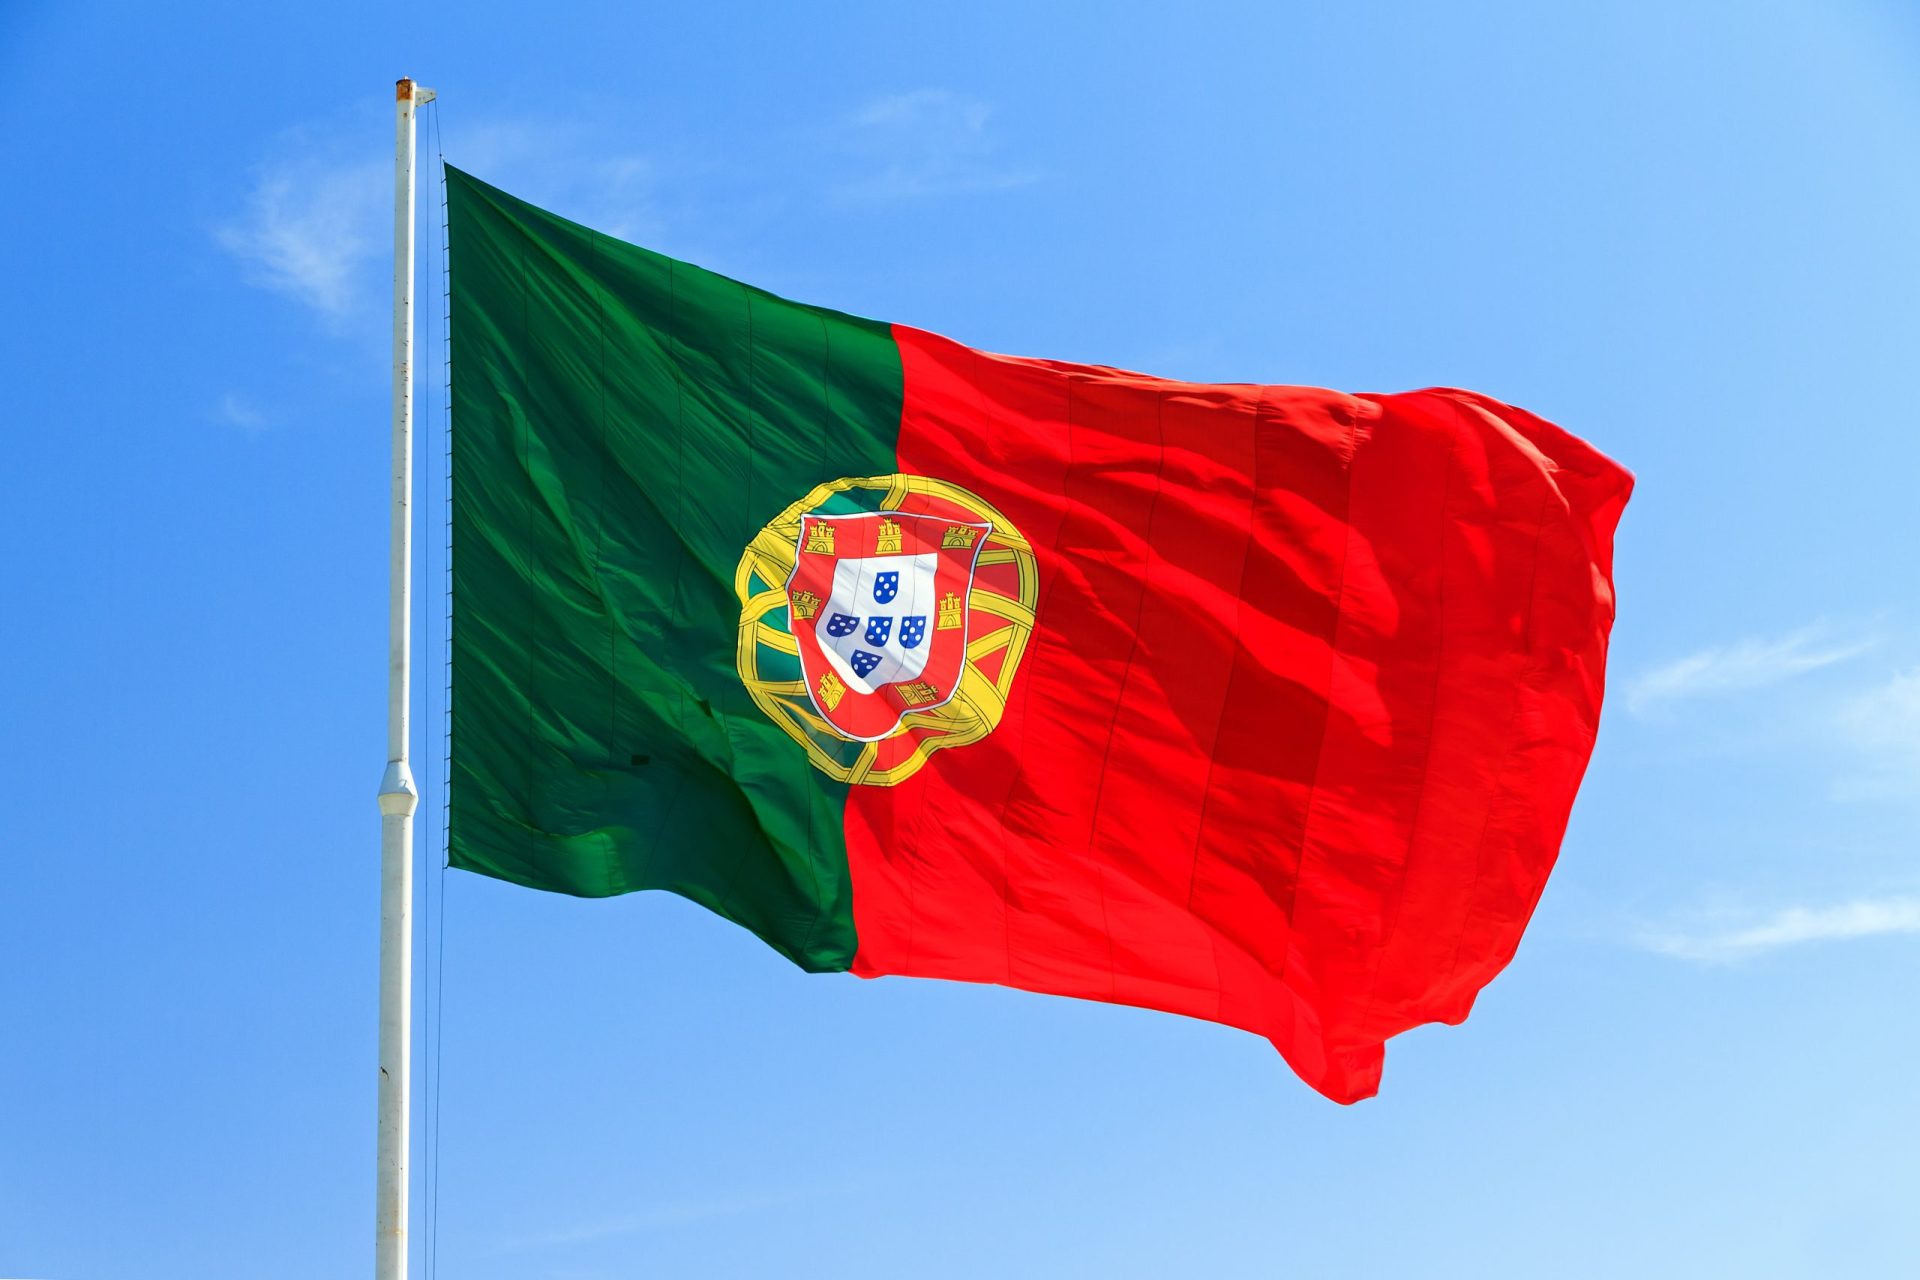 Portugal é o país mais “cool”, diz jornal espanhol